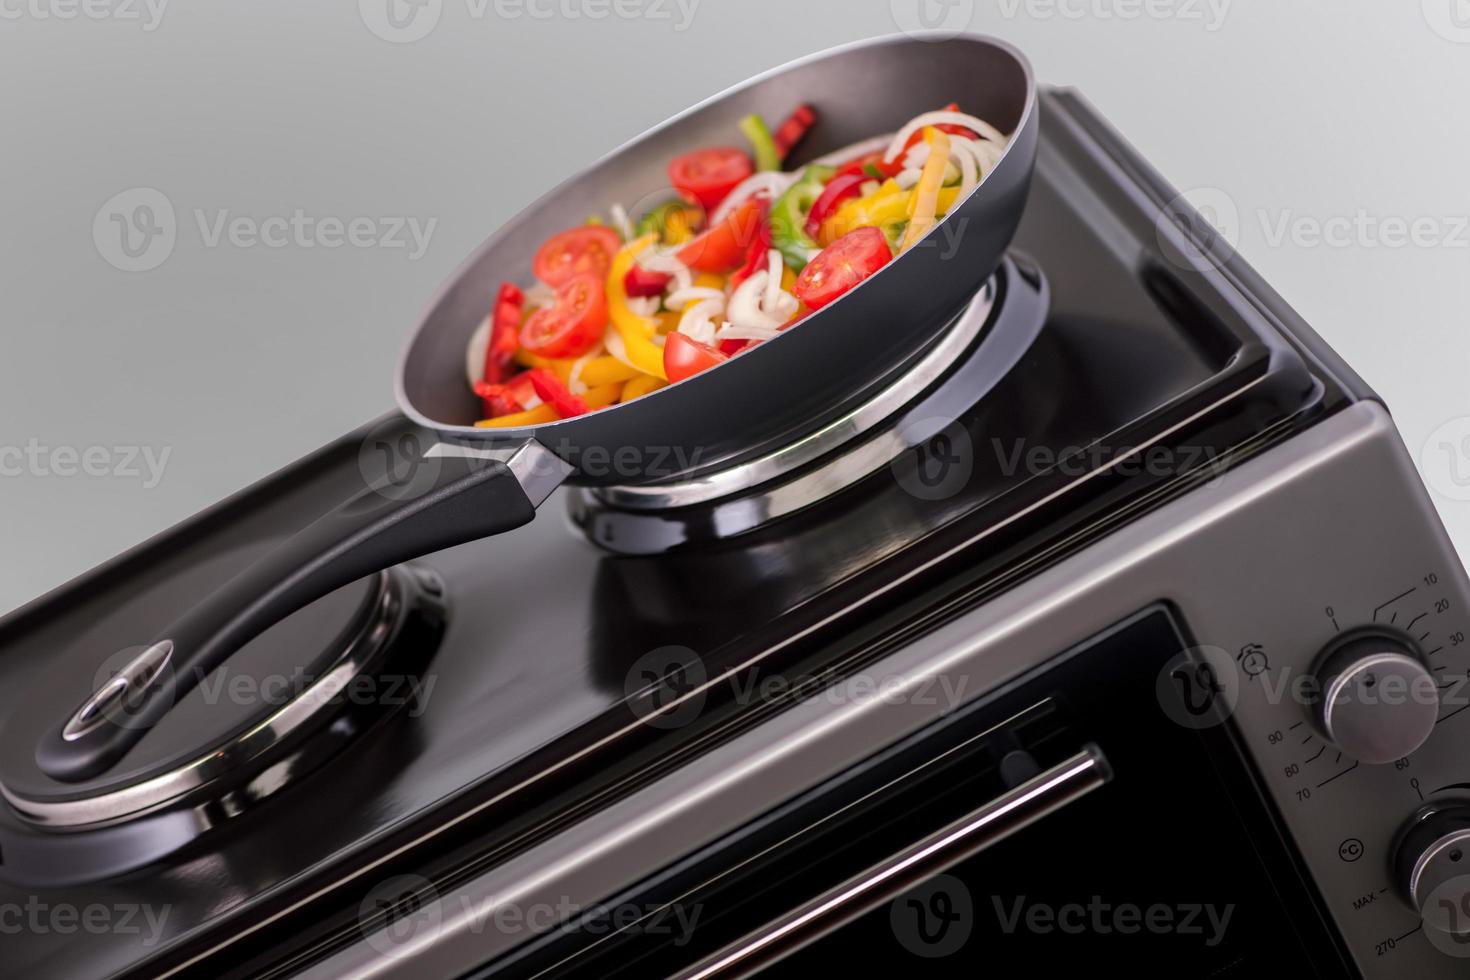 groenten in een koekenpan worden gekookt op een modern elektrisch fornuis. keuken apparatuur foto